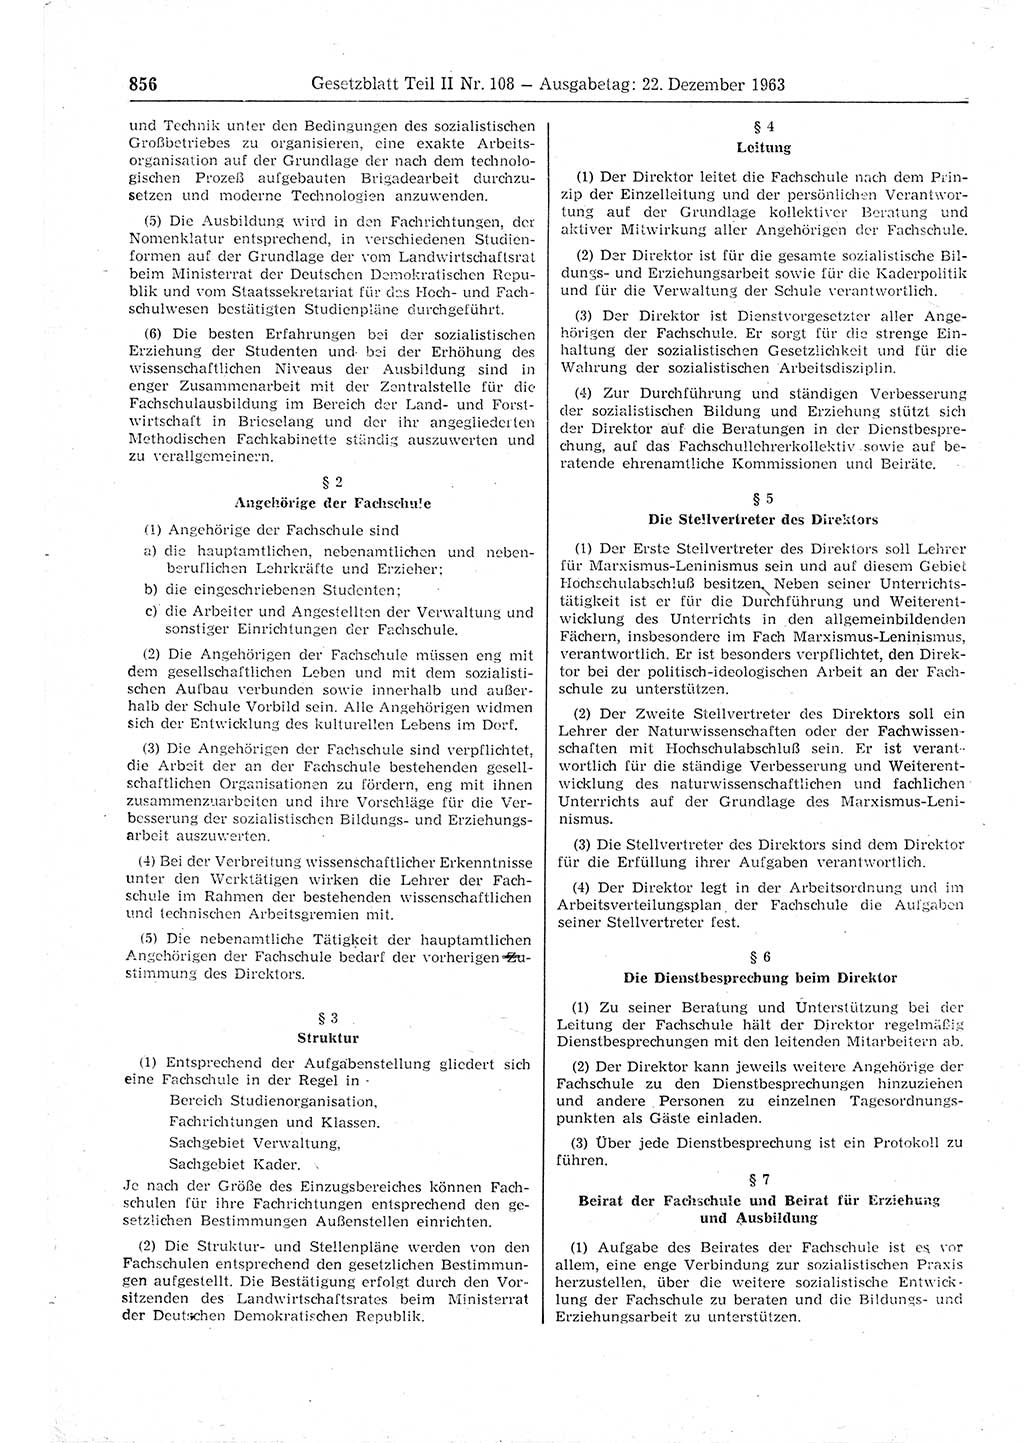 Gesetzblatt (GBl.) der Deutschen Demokratischen Republik (DDR) Teil ⅠⅠ 1963, Seite 856 (GBl. DDR ⅠⅠ 1963, S. 856)